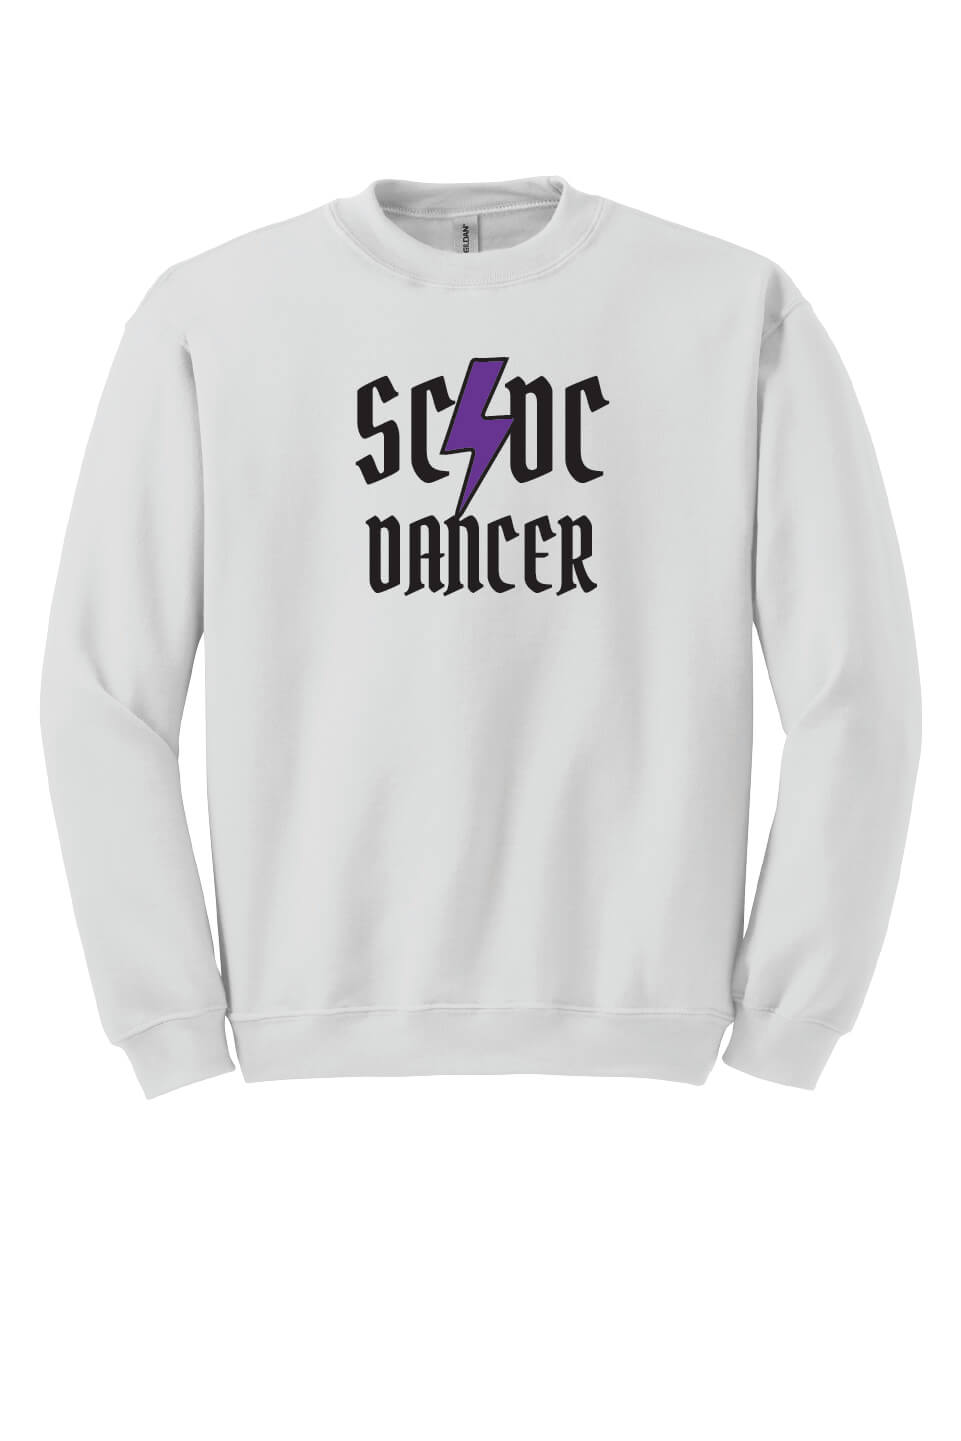 SCDC Dancer Crewneck Sweatshirt white